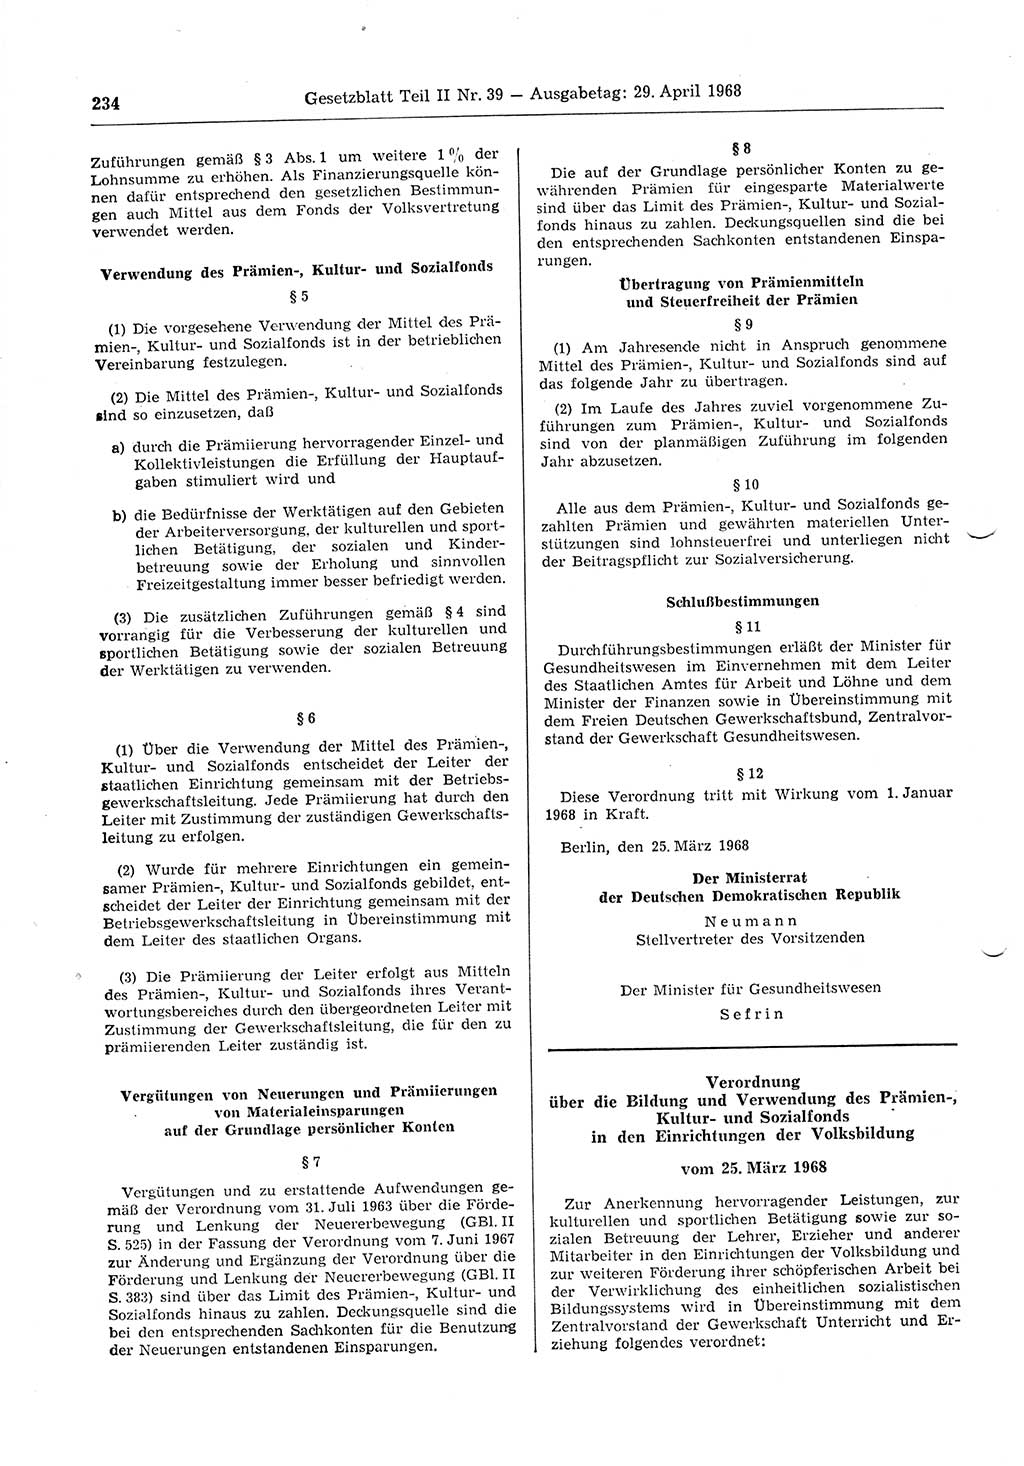 Gesetzblatt (GBl.) der Deutschen Demokratischen Republik (DDR) Teil ⅠⅠ 1968, Seite 234 (GBl. DDR ⅠⅠ 1968, S. 234)